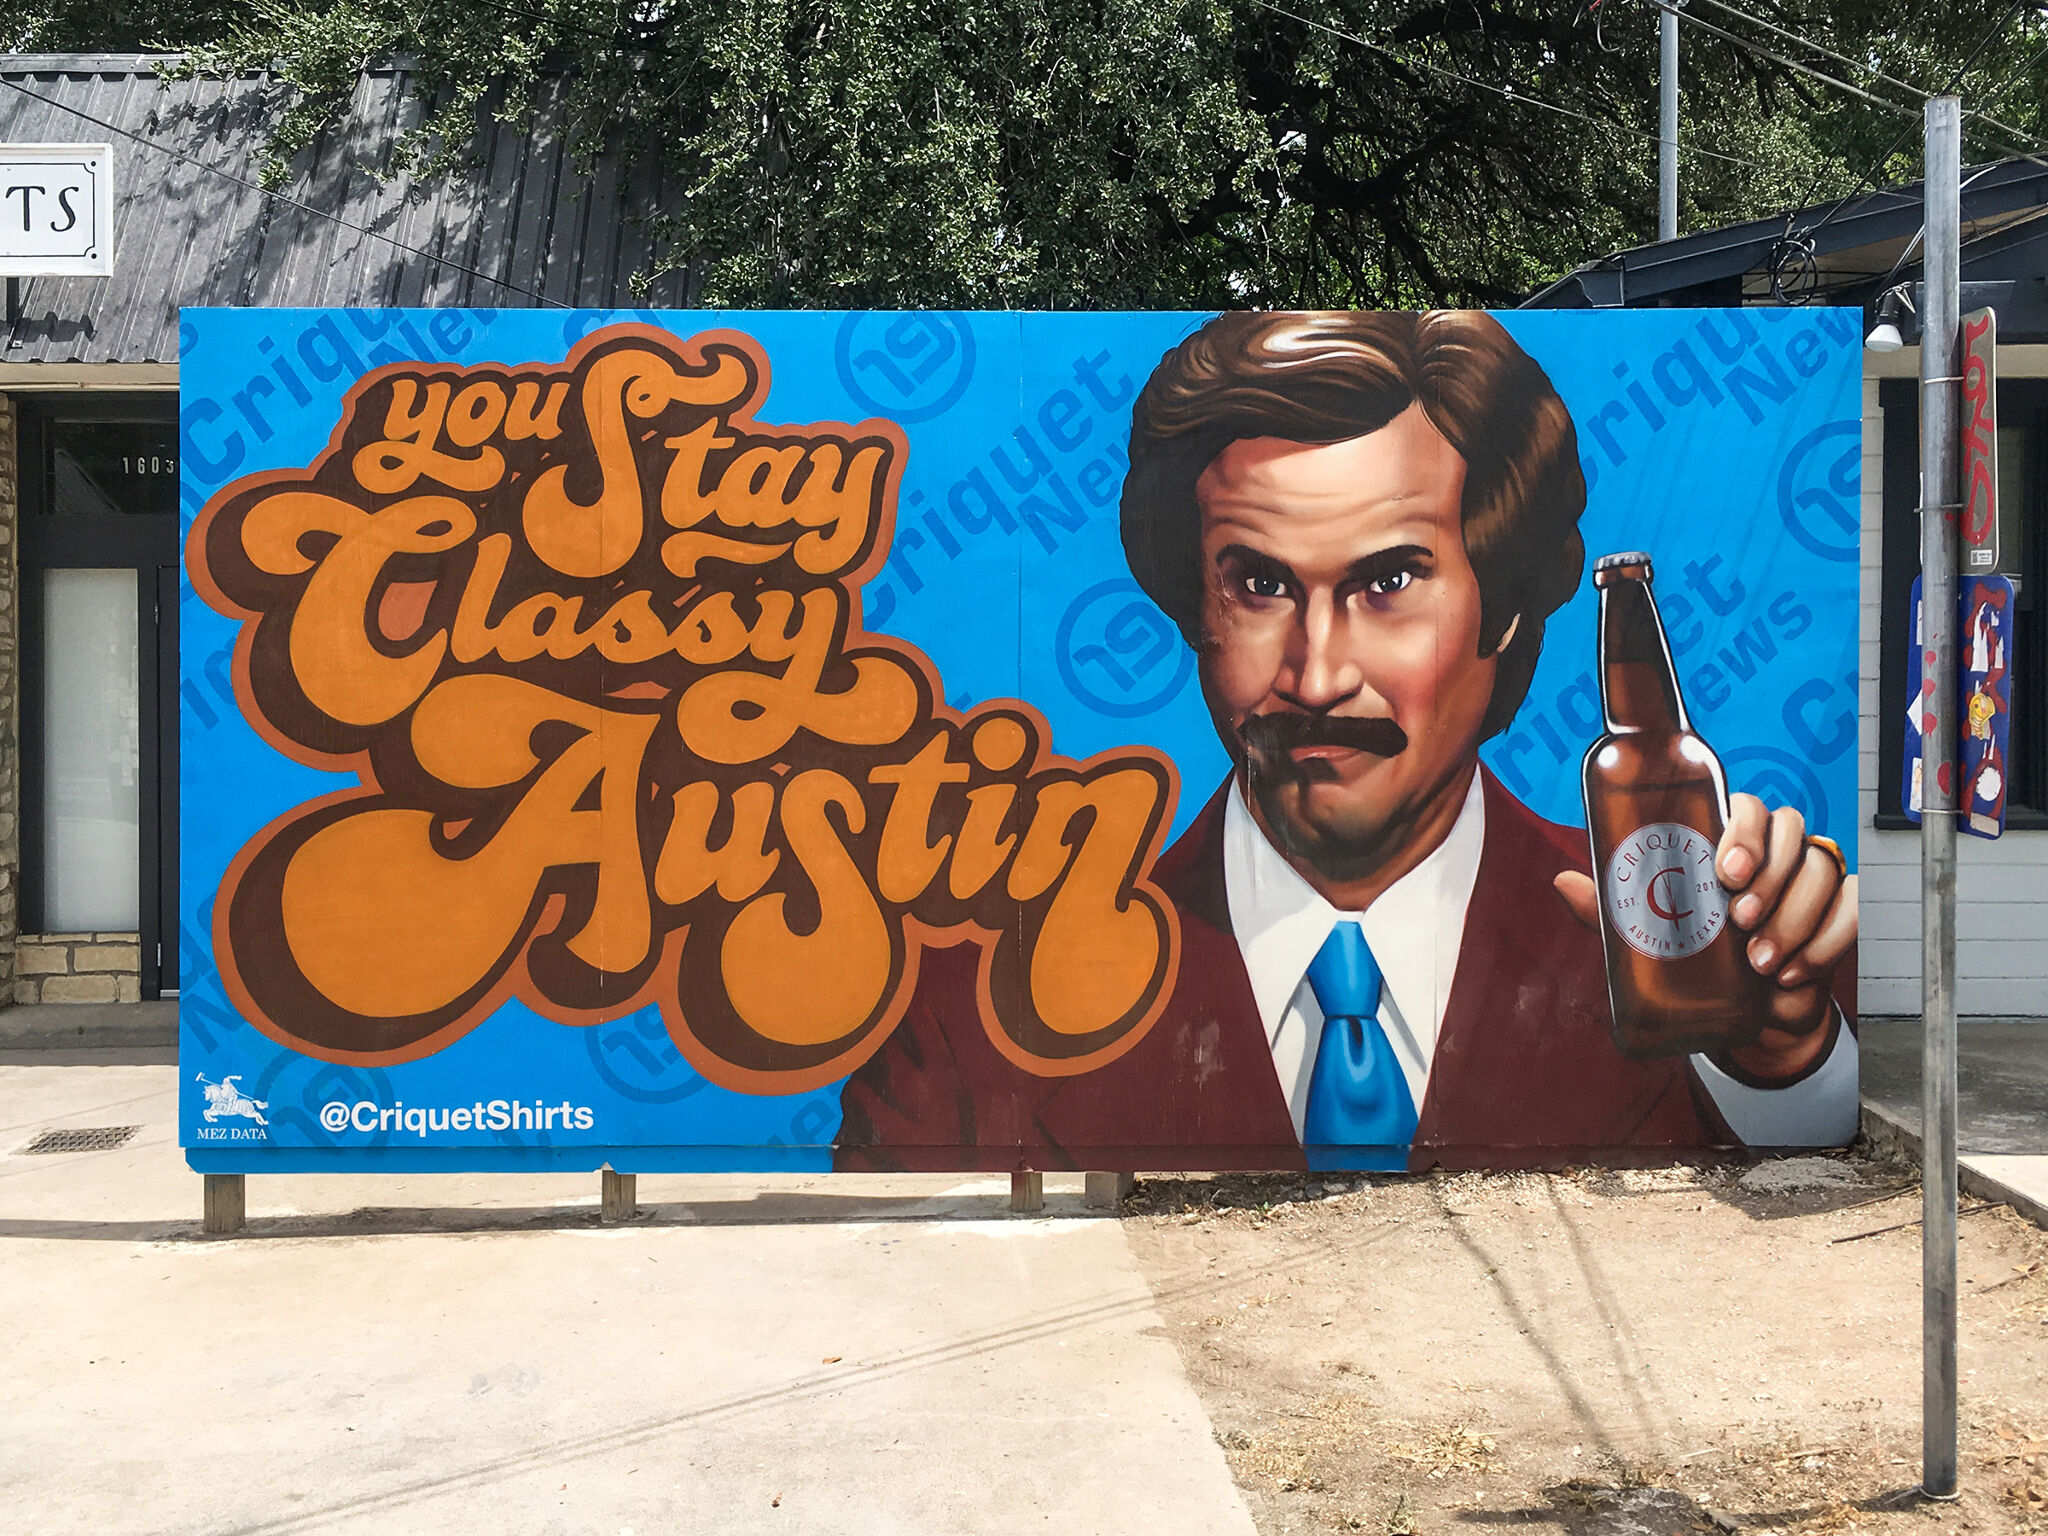 Mez Data&mdash;You Stay Classy Austin